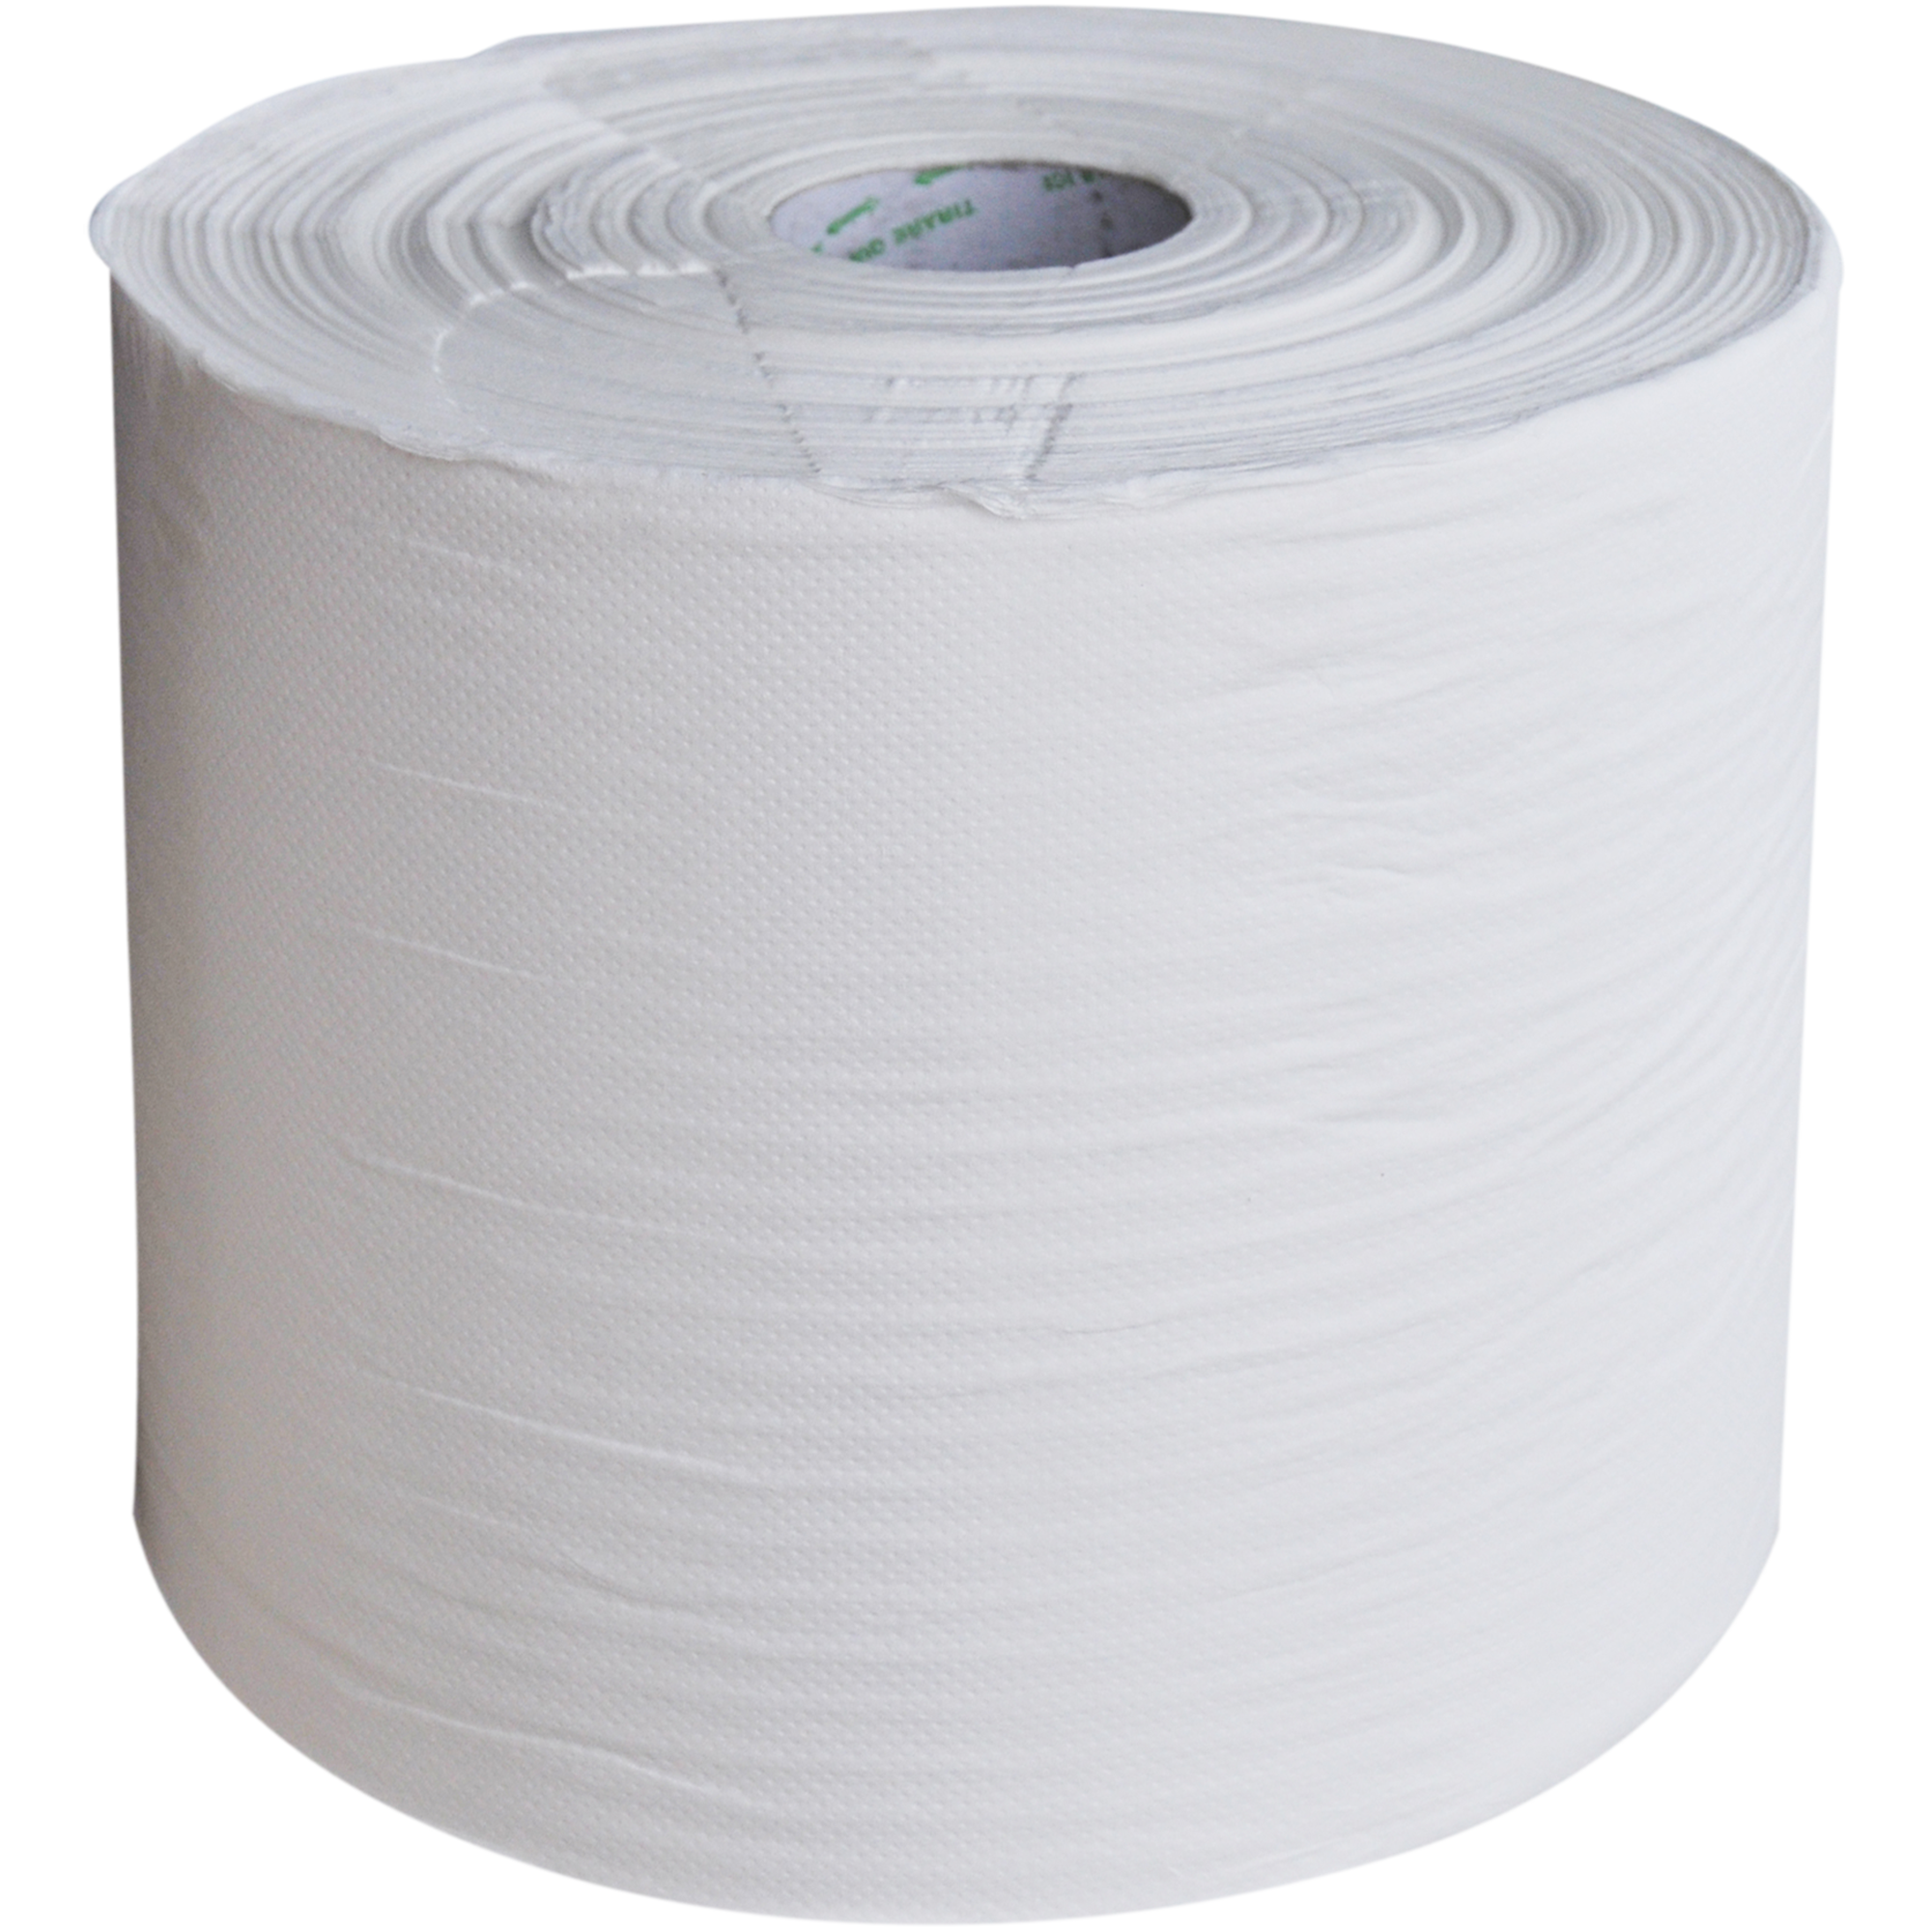 15401-2X800 Cleaning Paper is hoogwit papier op rollen van 800 meter geperforeerd op minimaal 2000 vellen van 40 cm.